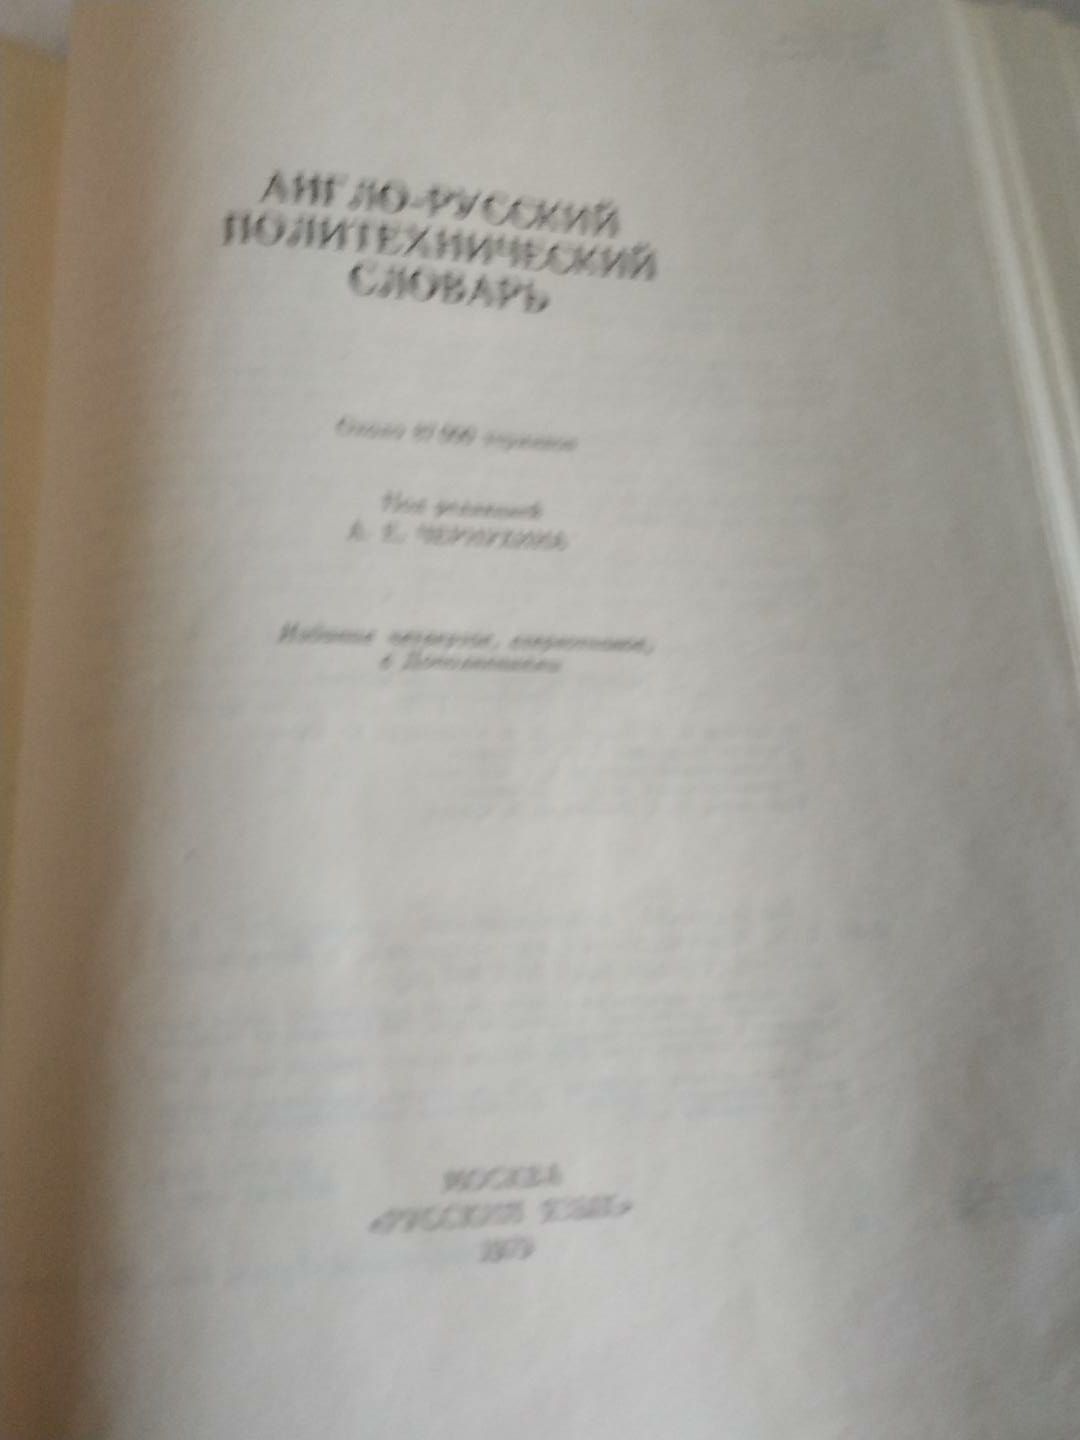 Англо-русский политехнический словарь,1979 г